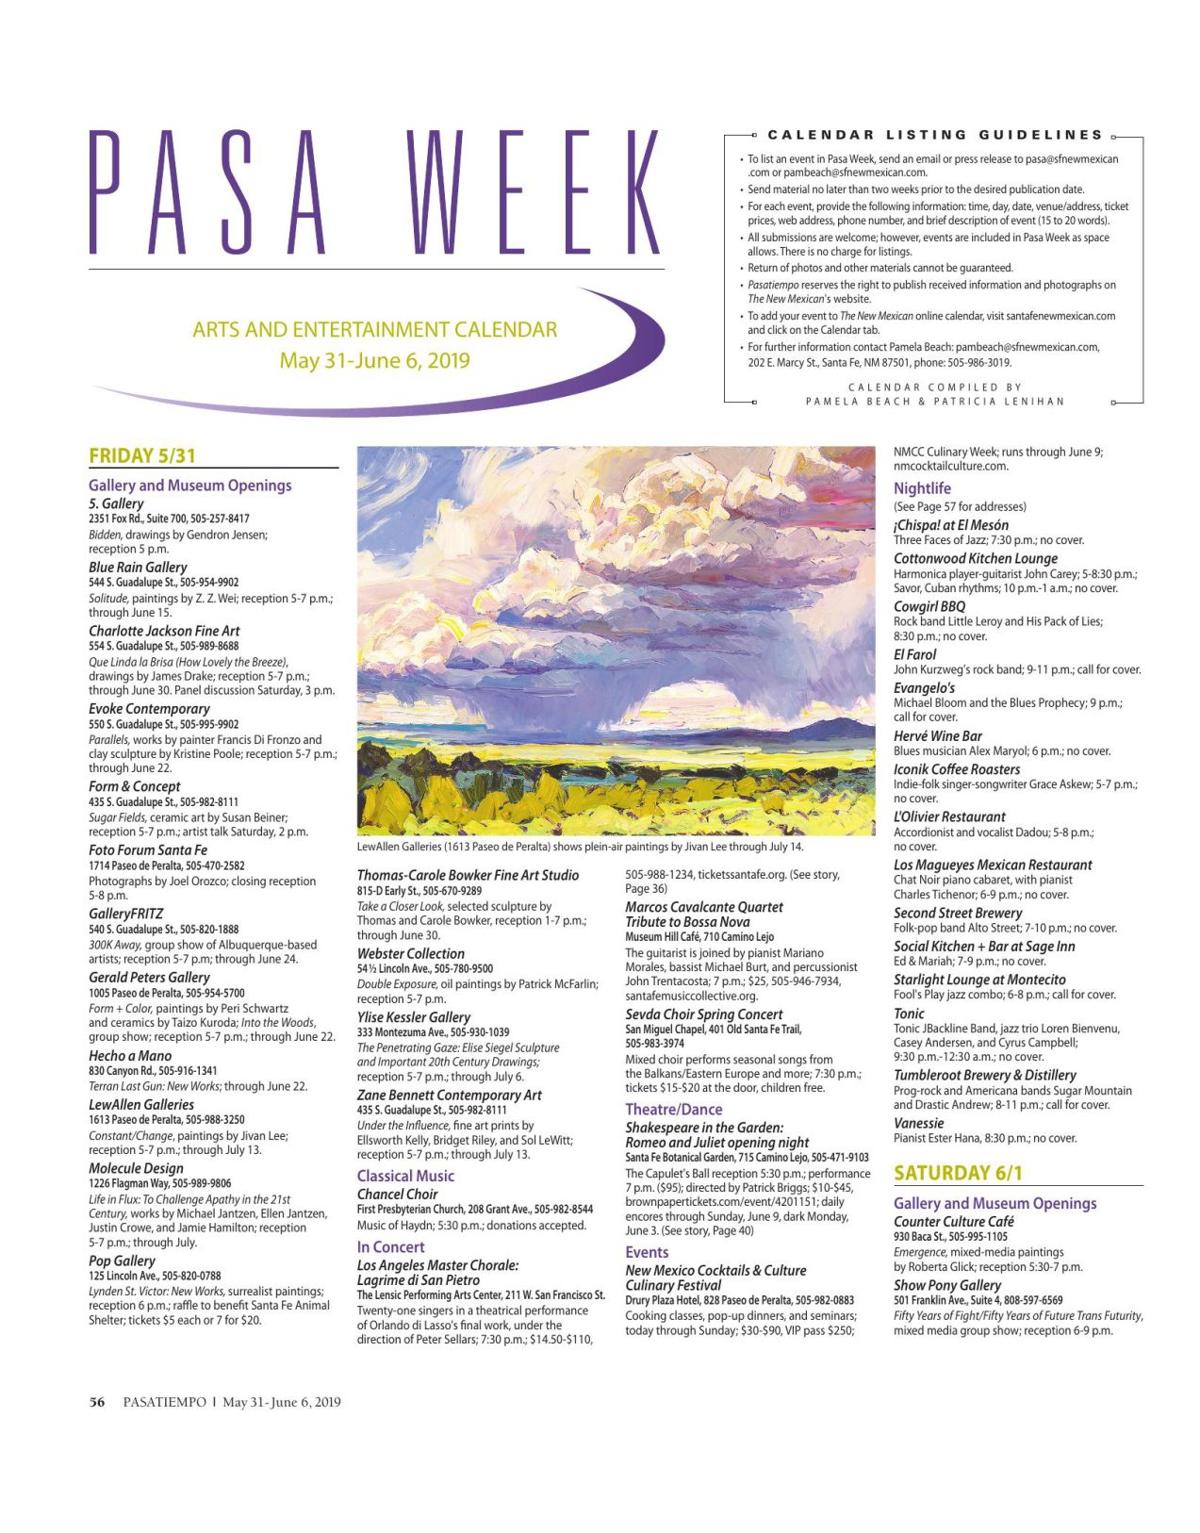 Read the Pasatiempo Calendar Pasa Calendar